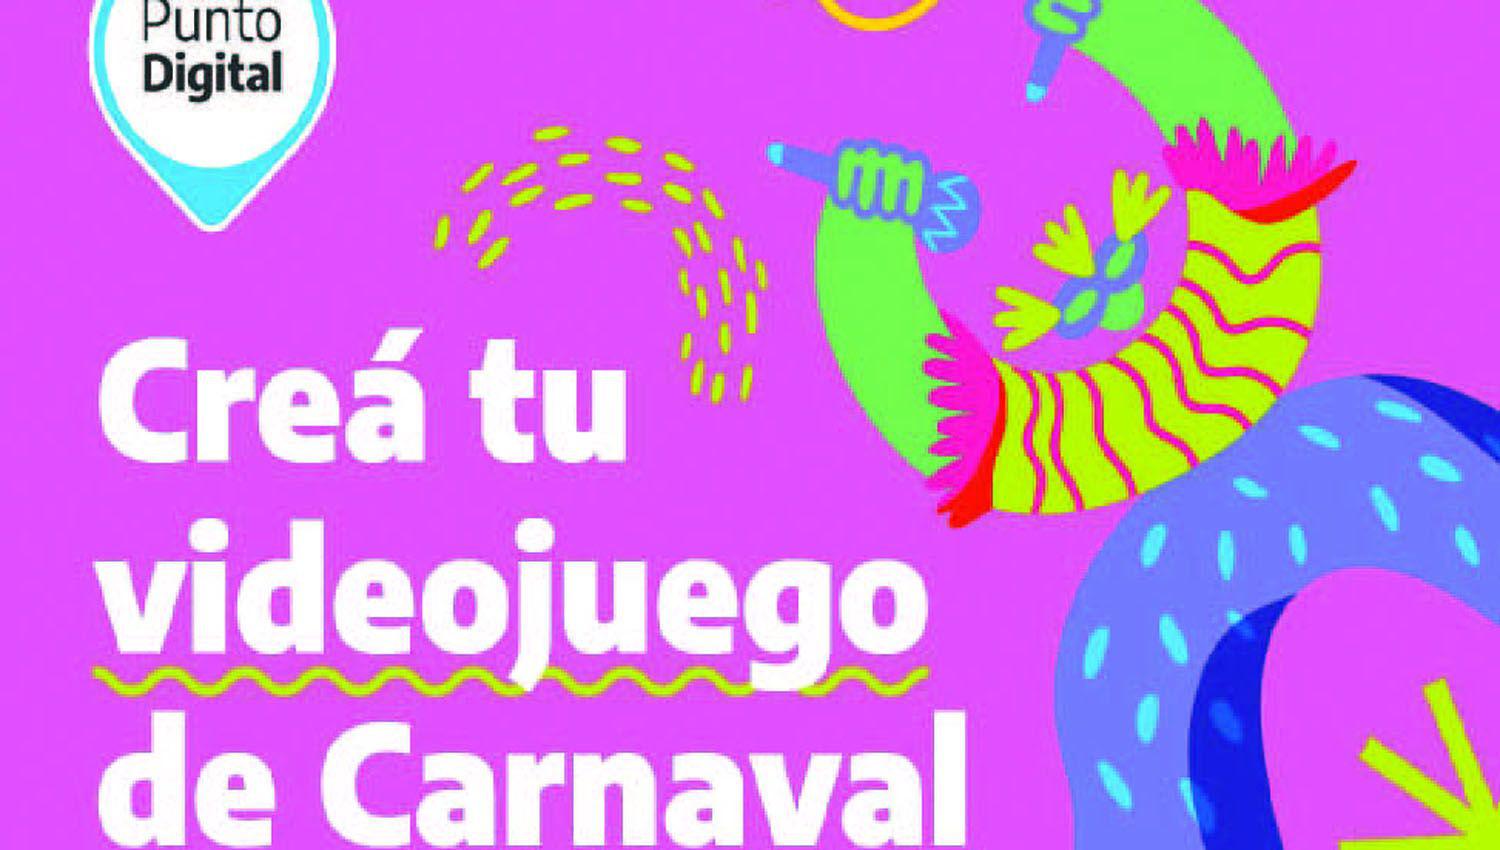 Punto Digital ofreceraacute actividades para festejar un carnaval diferente